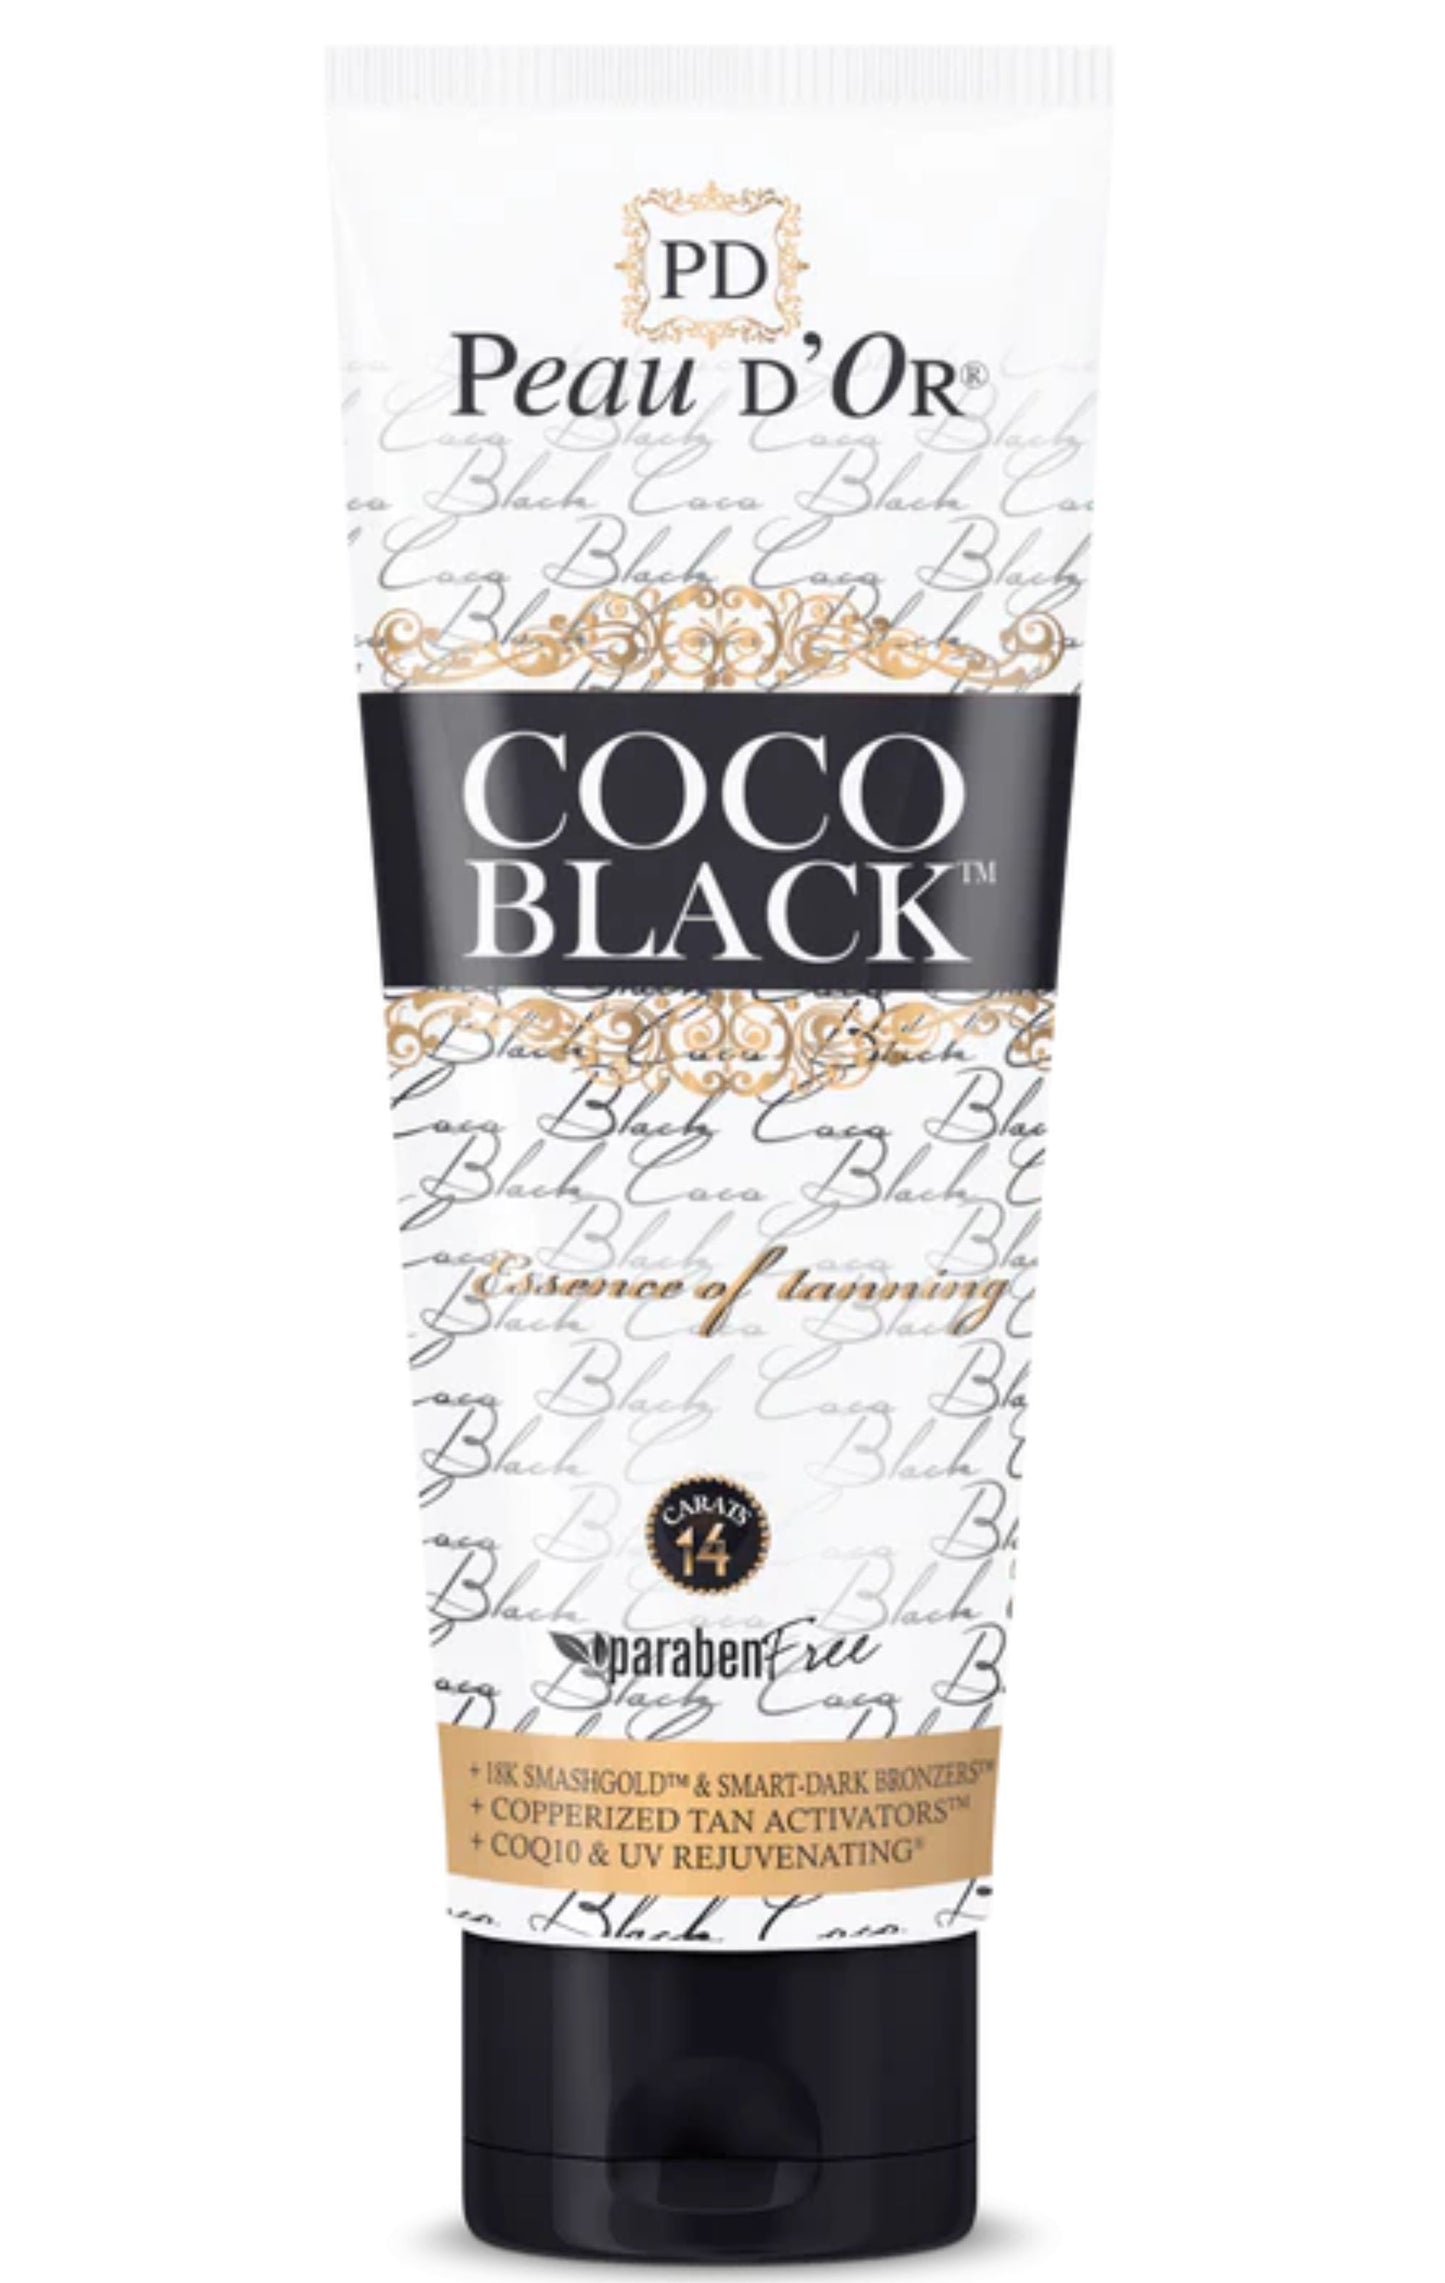 Coco black 250